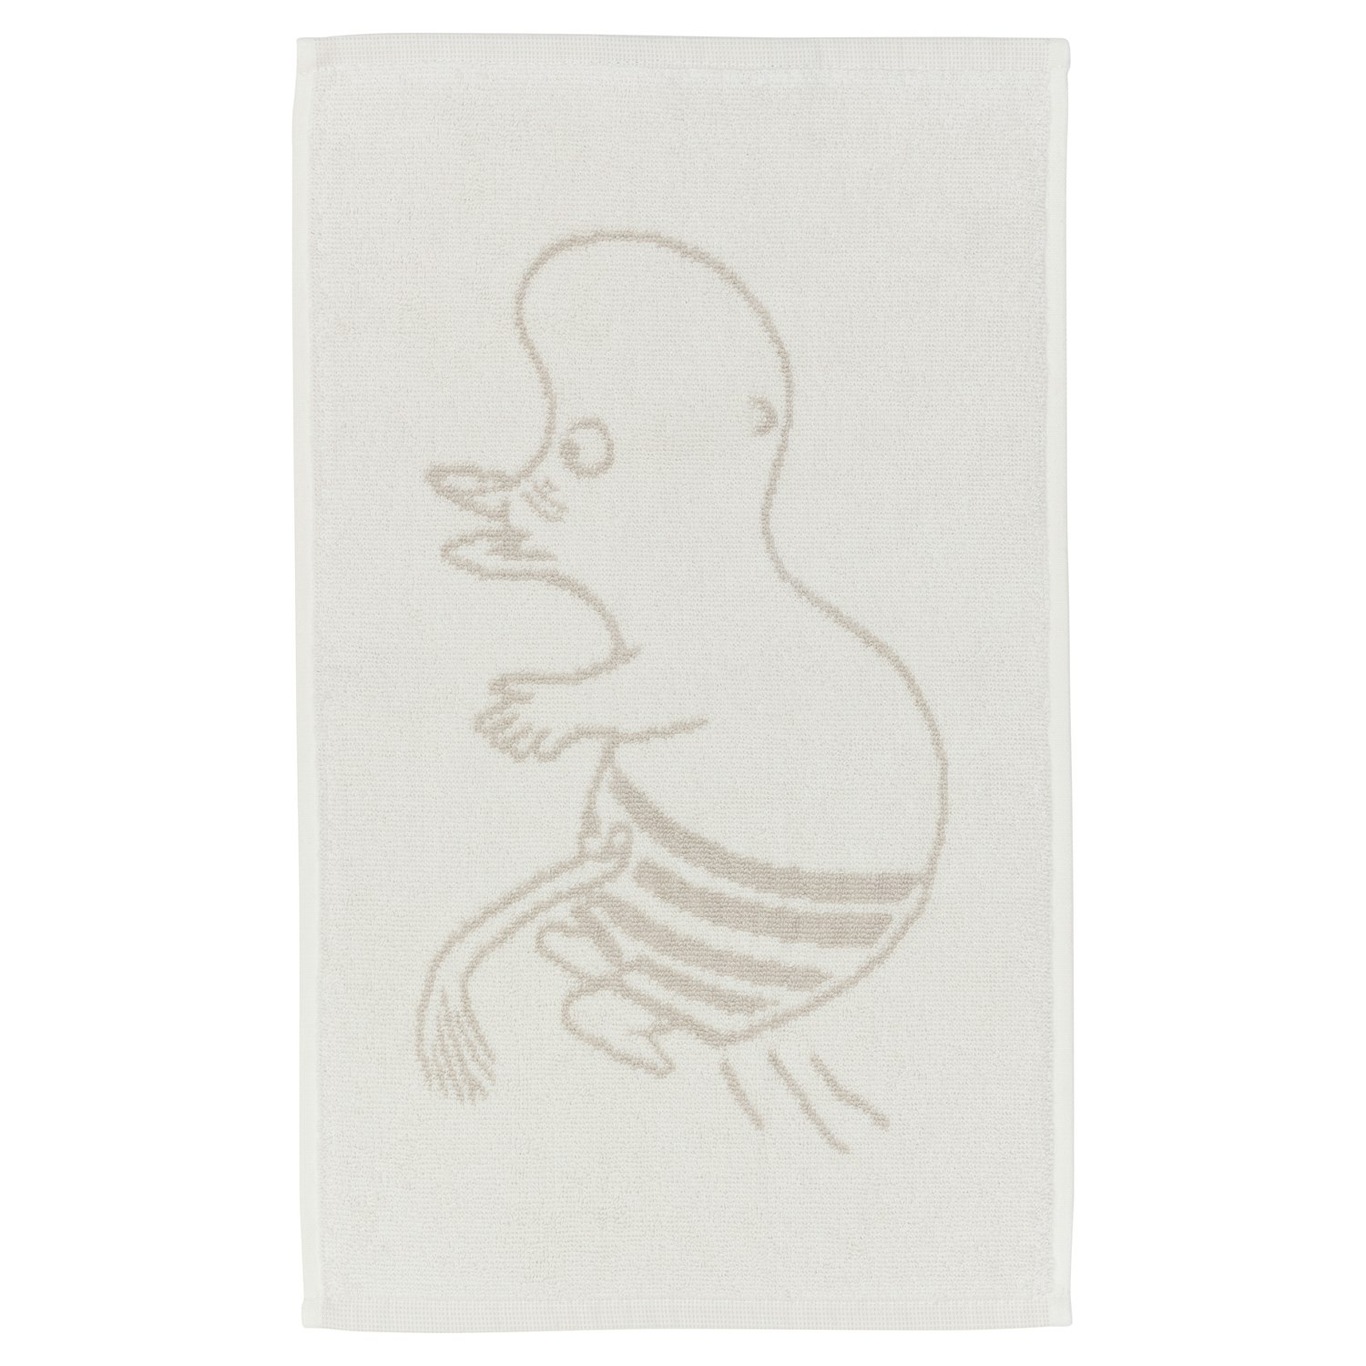 Moomin Towel 30x50 cm, Moomintroll White